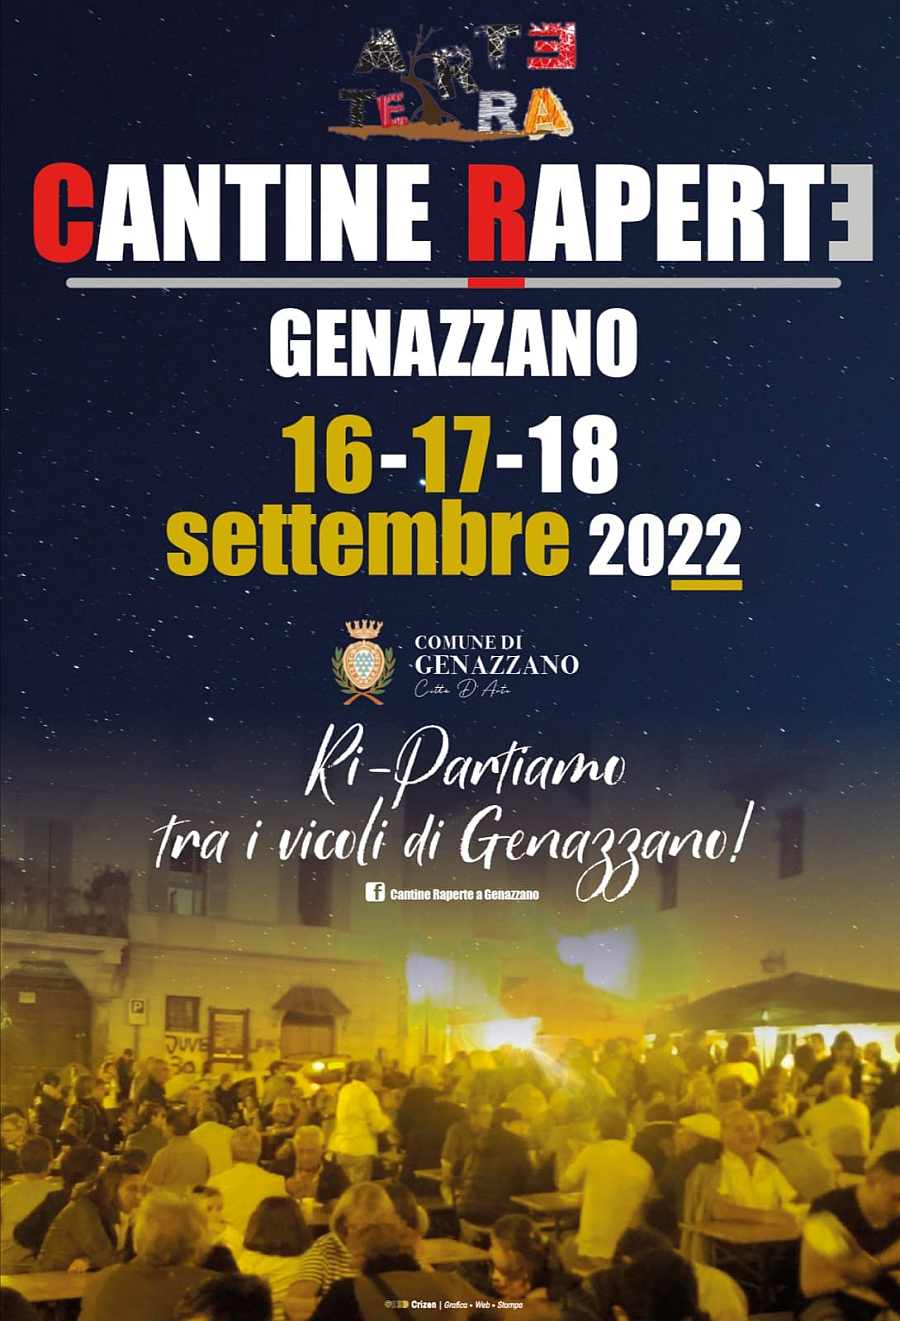 Genazzano(RM)
"Cantine Aperte"
16-17-18 Settembre 2022